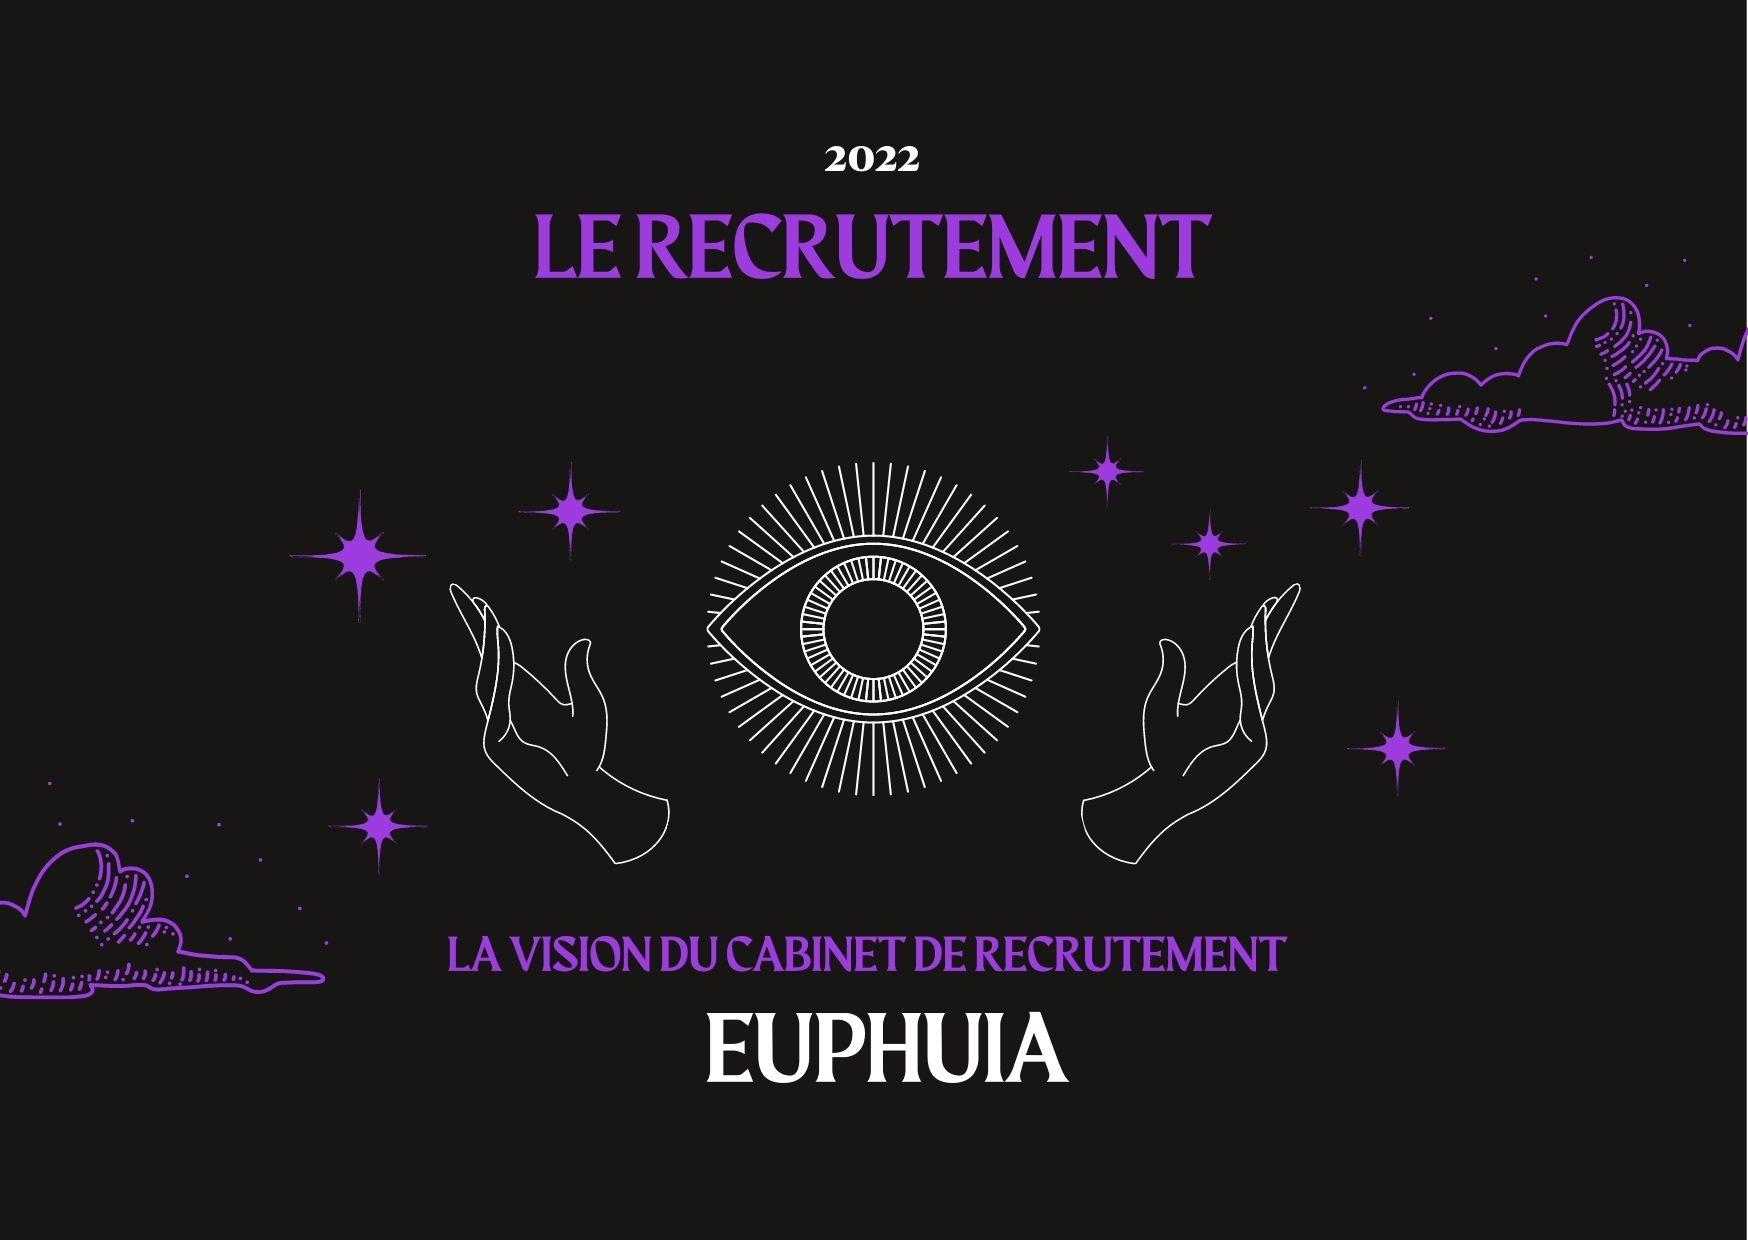 Le Recrutement en 2022 : la vision du cabinet de recrutement Euphuia